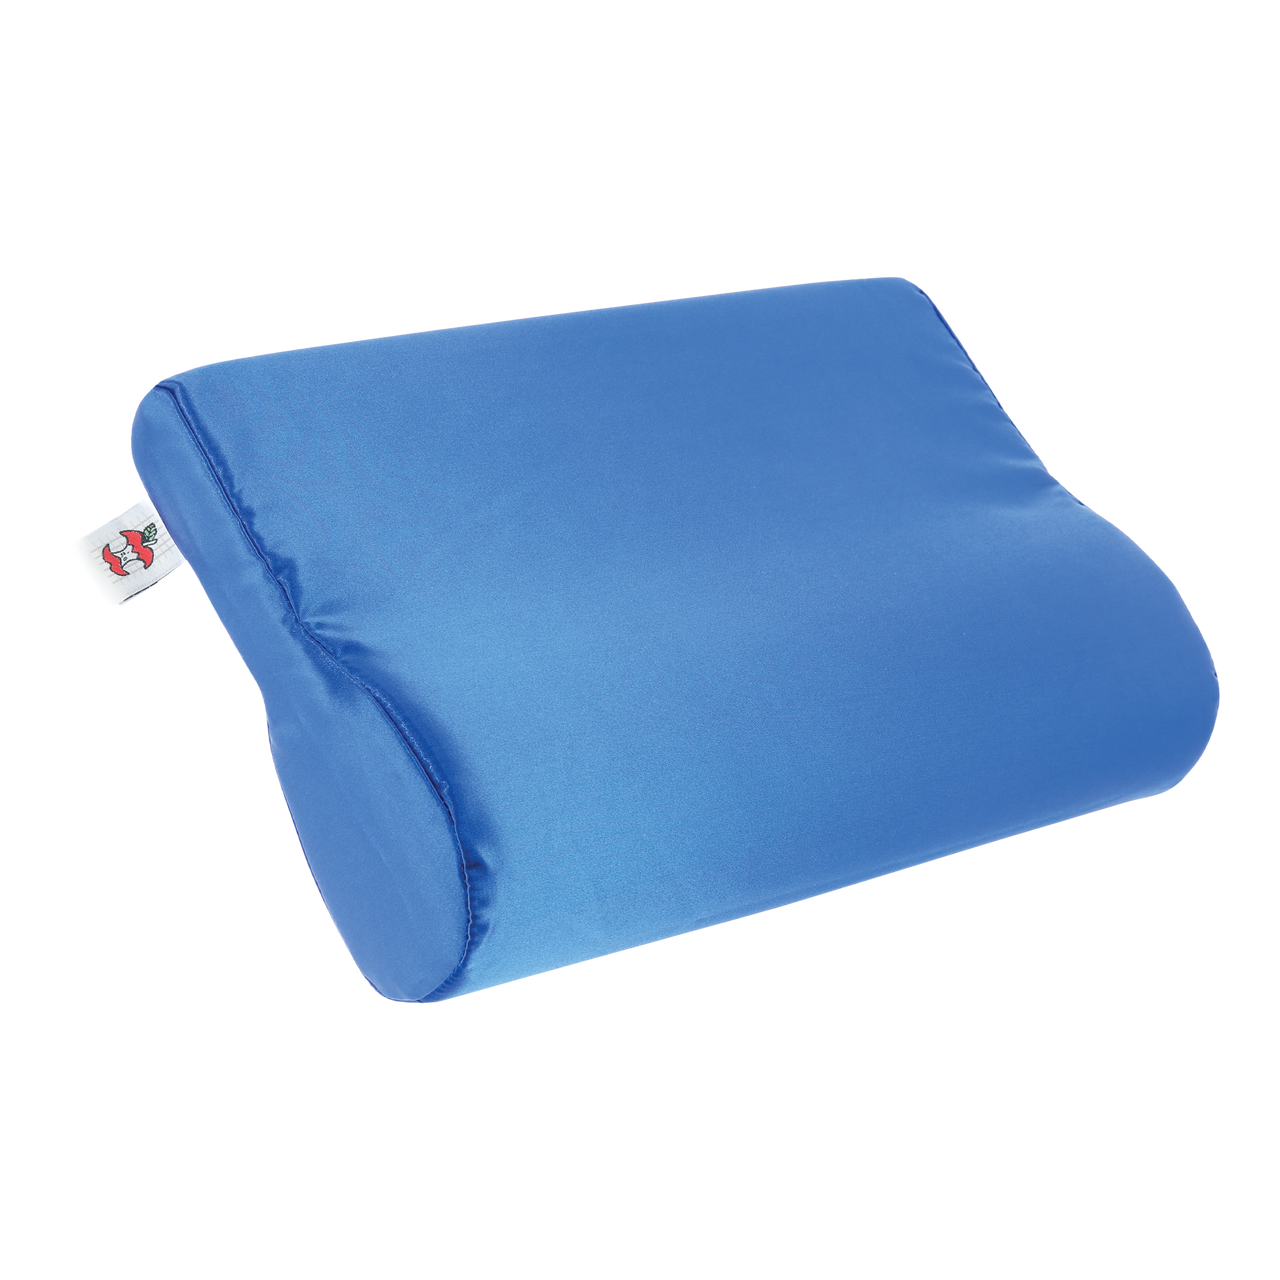 Core Products FOM-109 Ab Contour Cervical Support Pillow, Blue